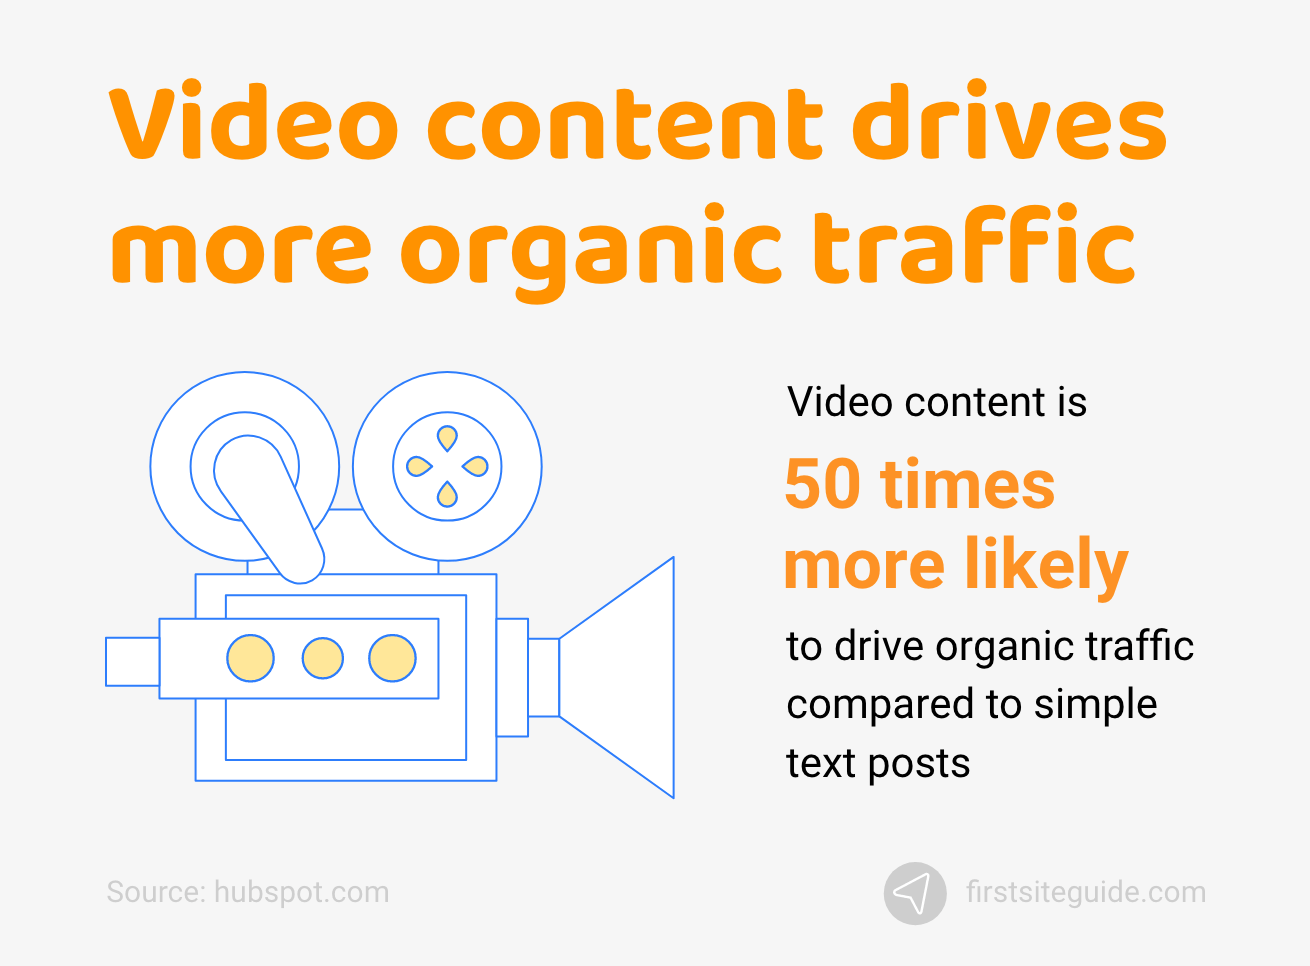 Videoinhalte sorgen für mehr organischen Traffic